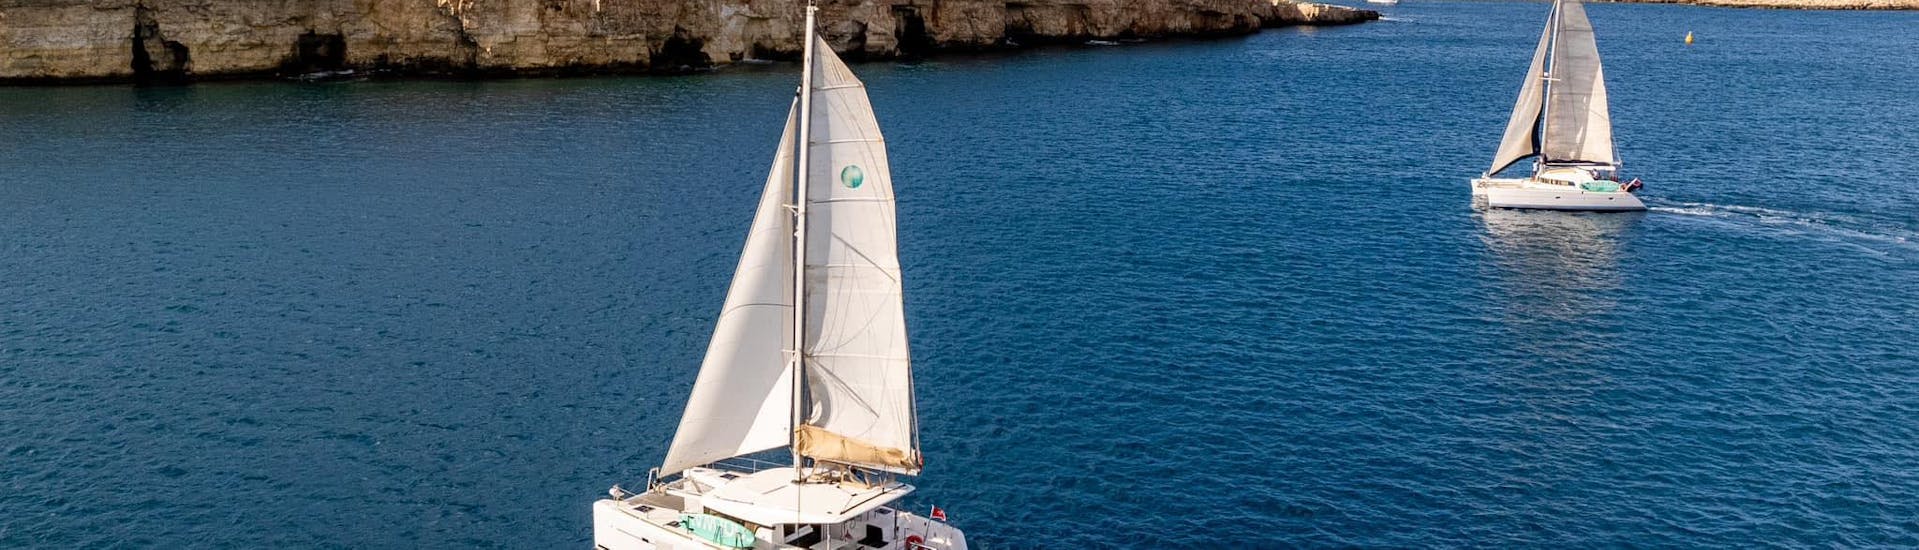 Nuestros catamaranes en las hermosas aguas de Malta.